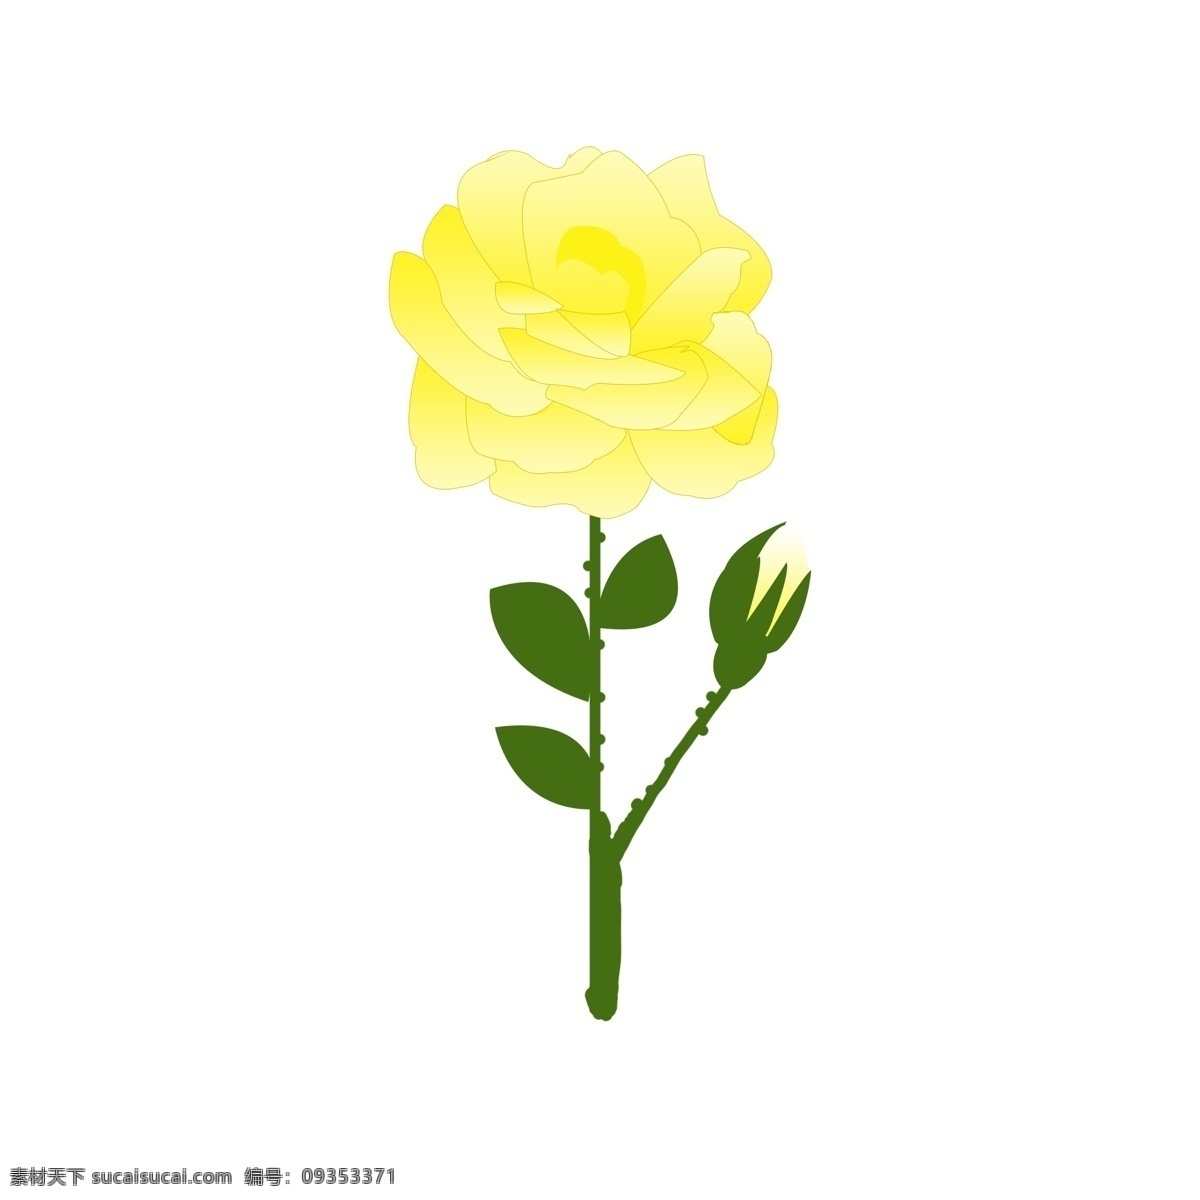 玫瑰 黄 香槟 玫瑰花 元素 手绘玫瑰 香槟玫瑰 黄玫瑰 玫瑰枝叶